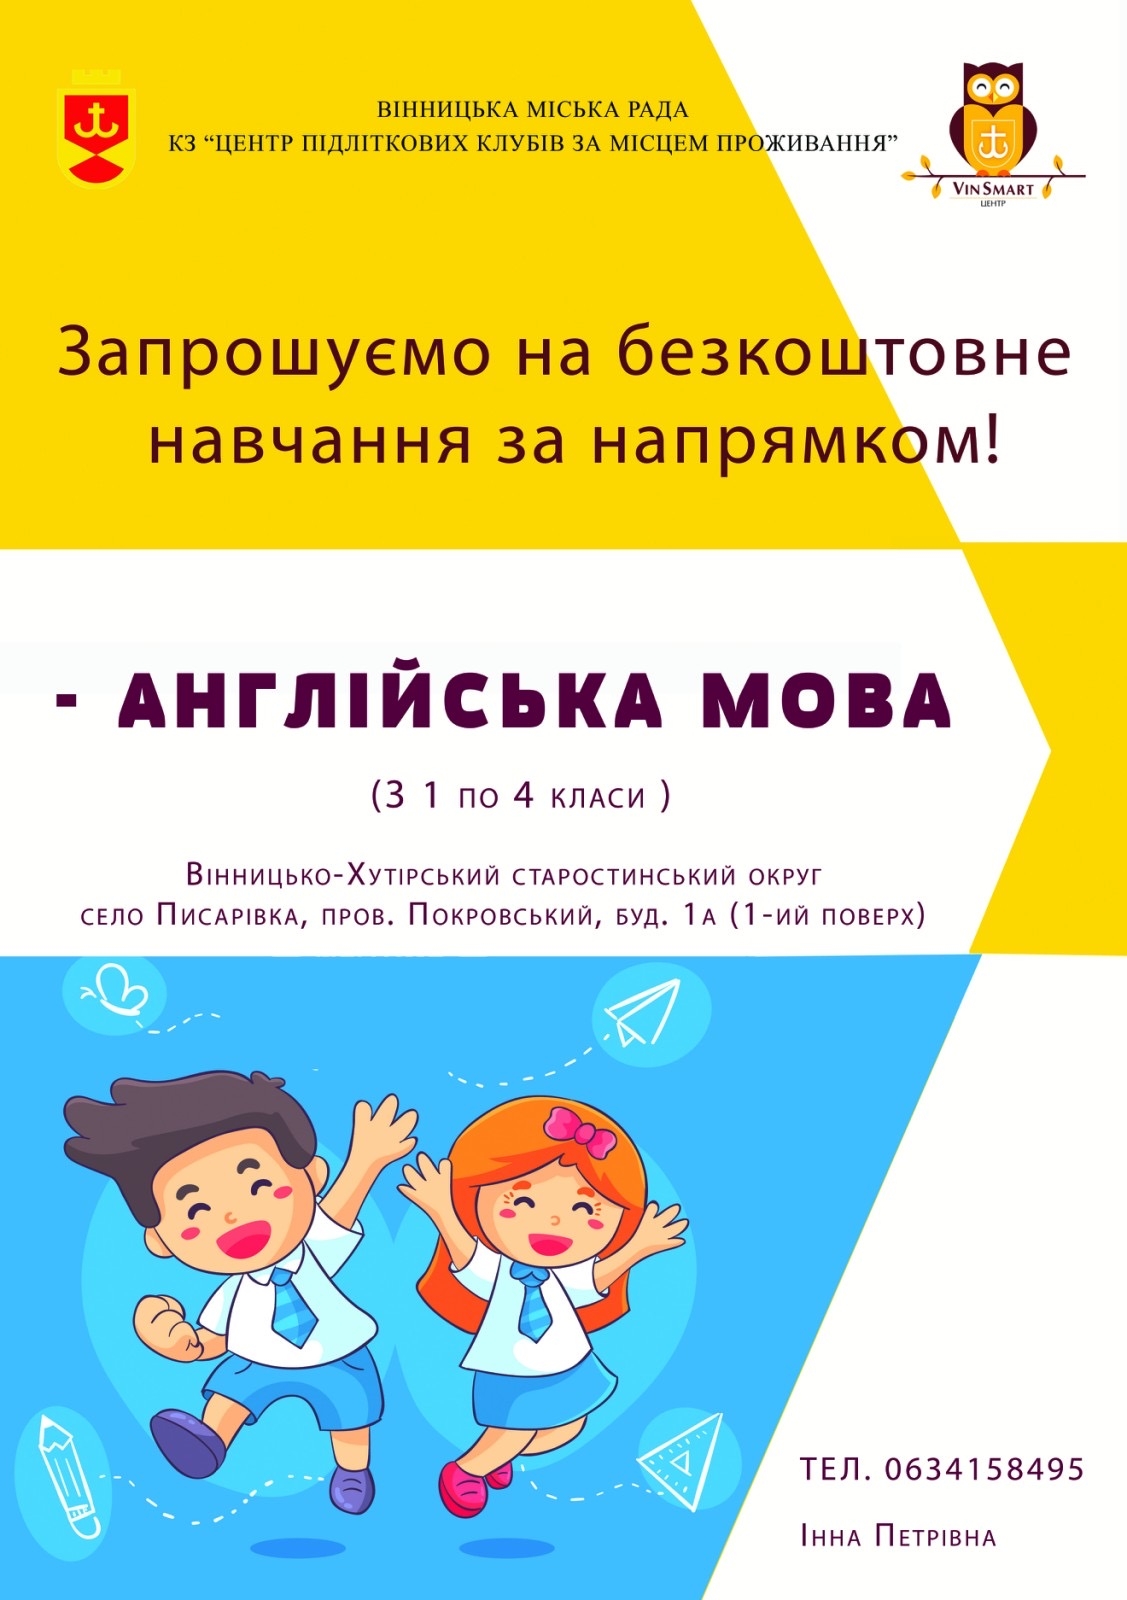 У Писарівці діти зможуть відвідувати безкоштовні заняття з англійської мови від центру VinSmart